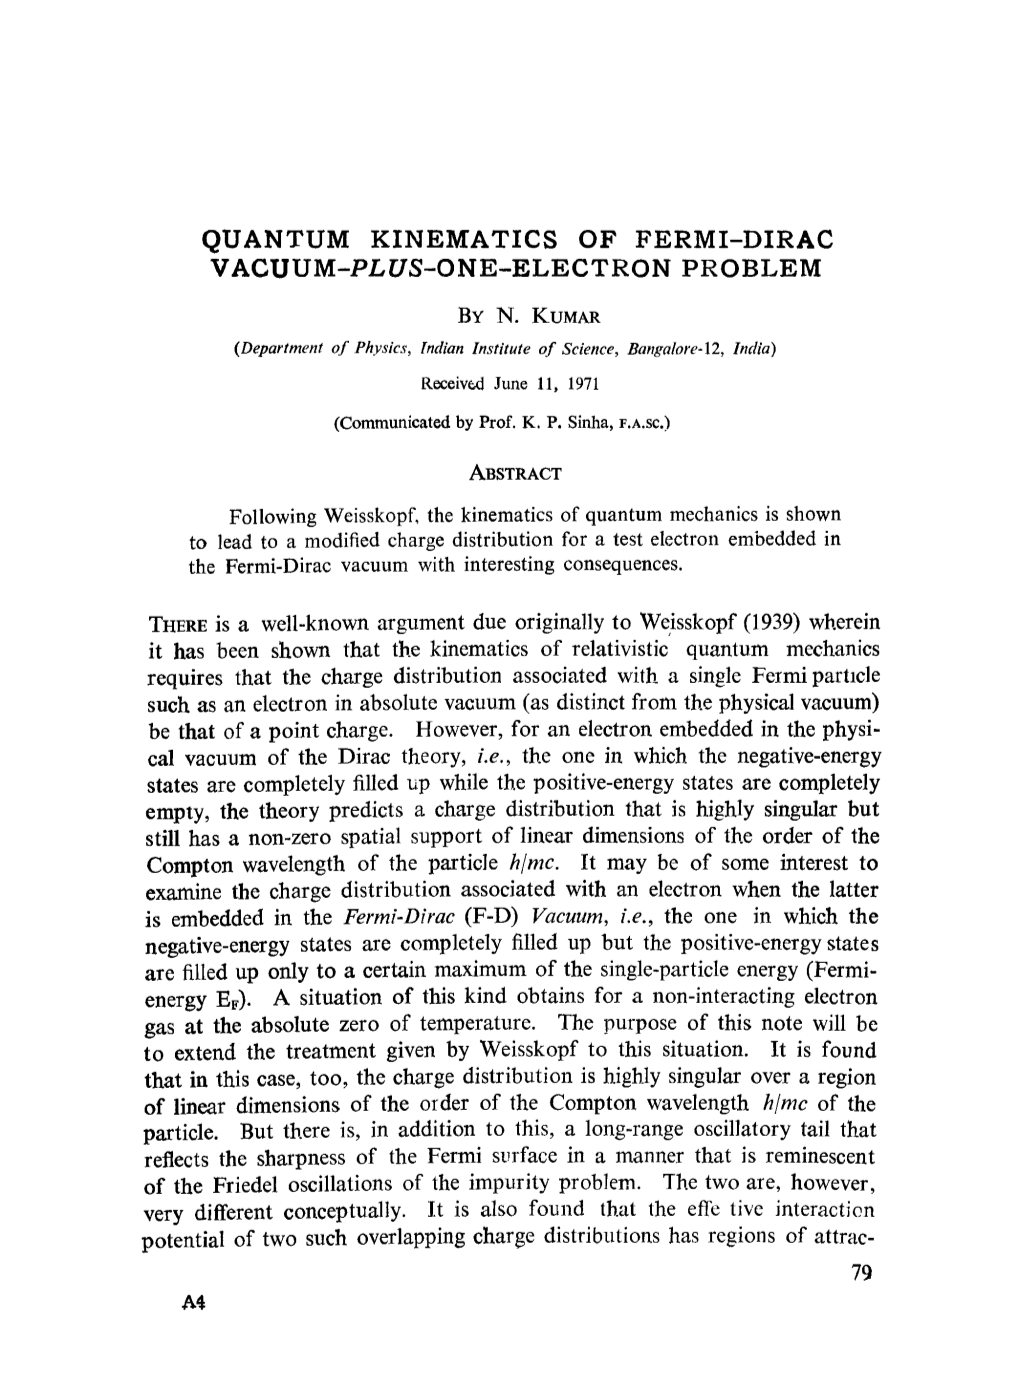 Quantum Kinematics of Fermi-Dirac Vacuum